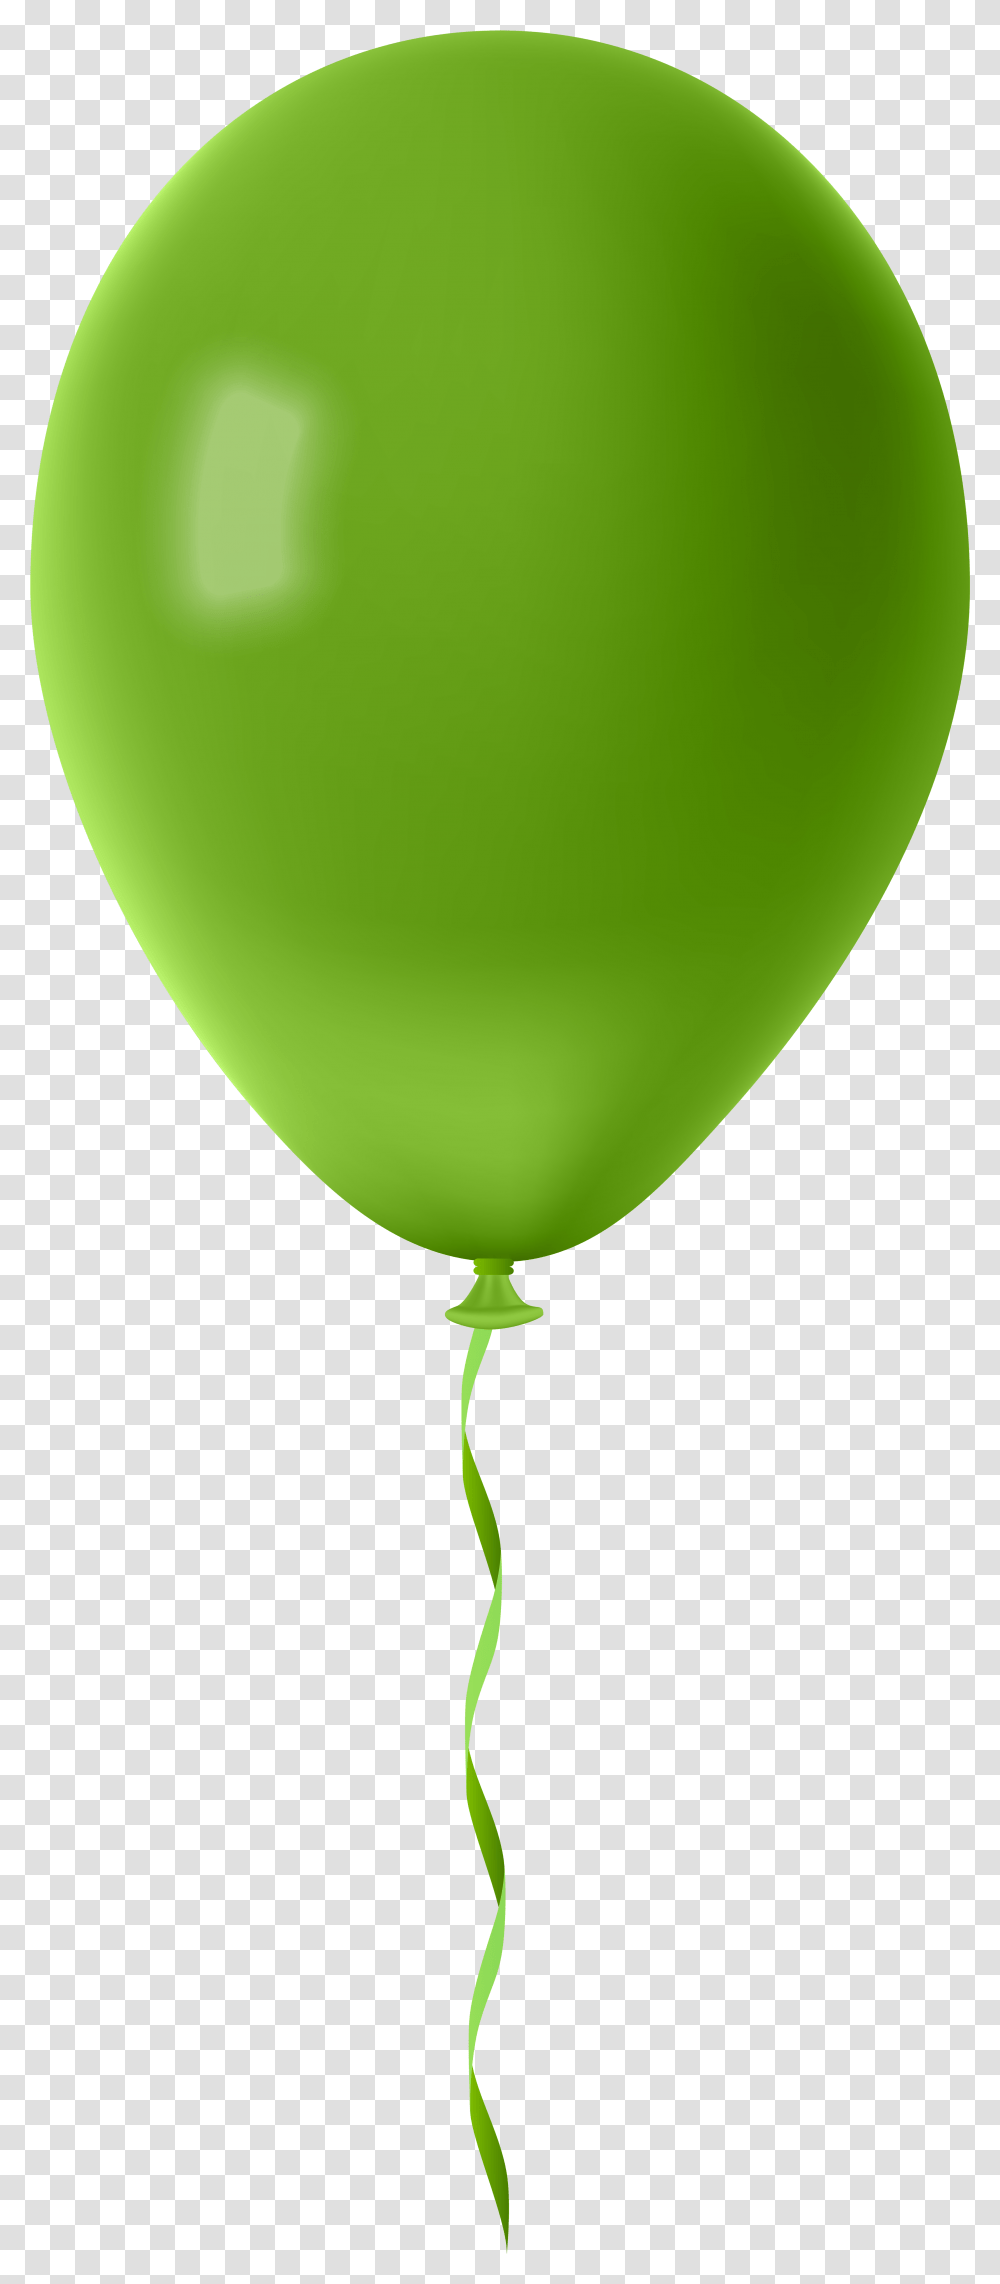 Green Balloon, Tennis Ball, Sport, Sports Transparent Png